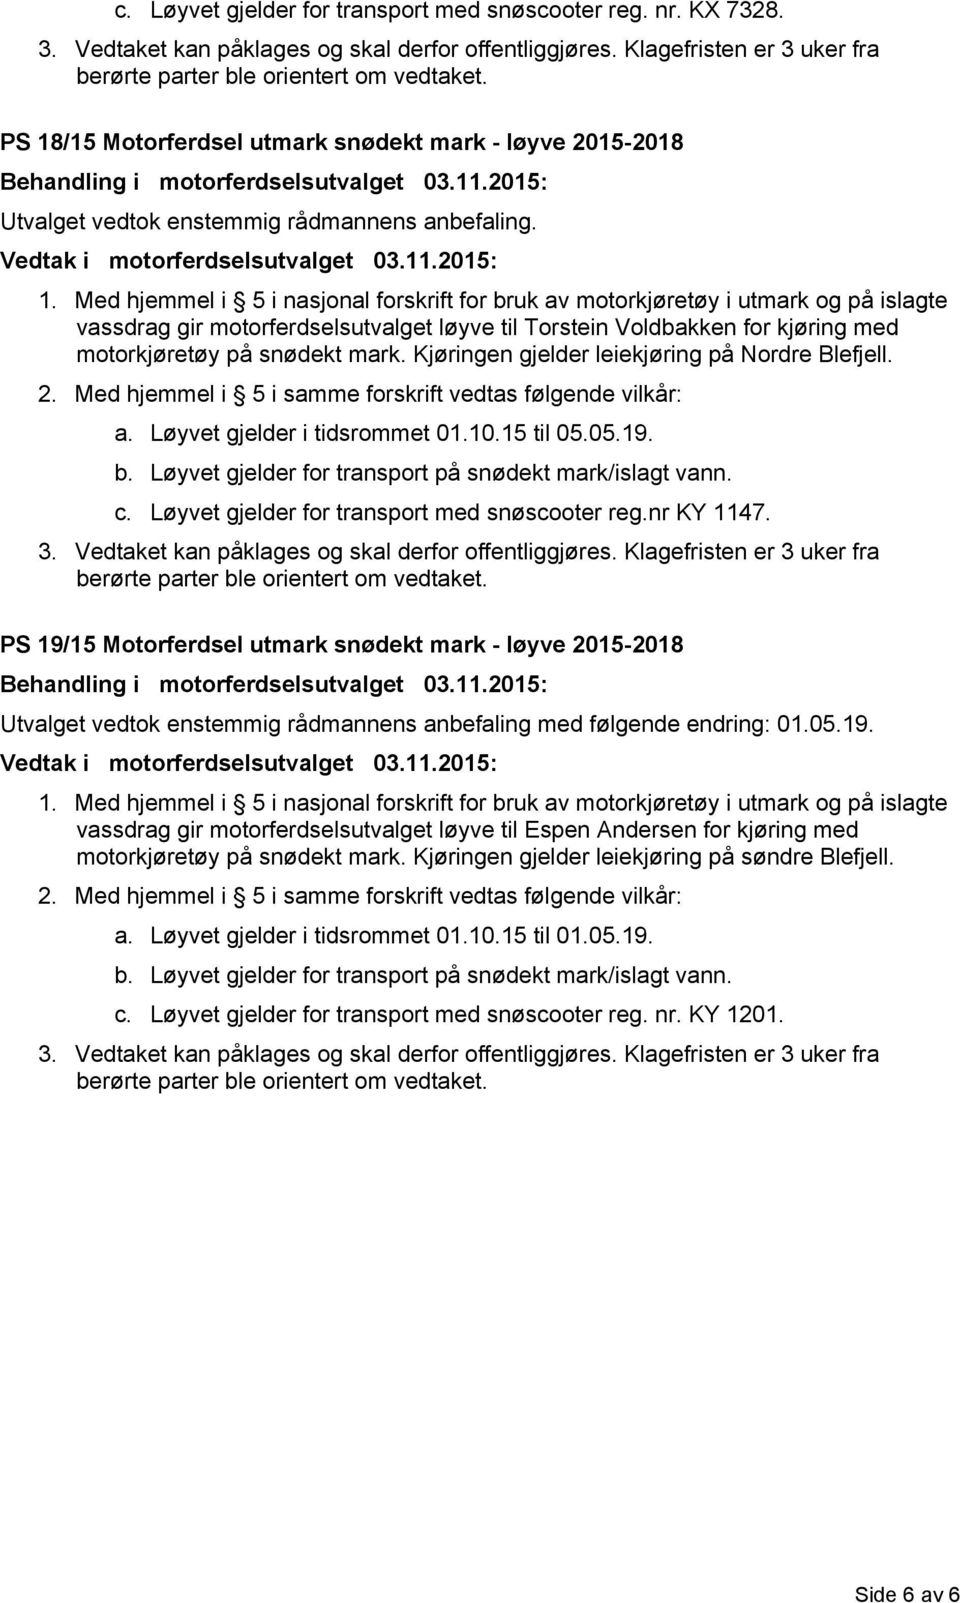 Kjøringen gjelder leiekjøring på Nordre Blefjell. a. Løyvet gjelder i tidsrommet 01.10.15 til 05.05.19. c. Løyvet gjelder for transport med snøscooter reg.nr KY 1147.